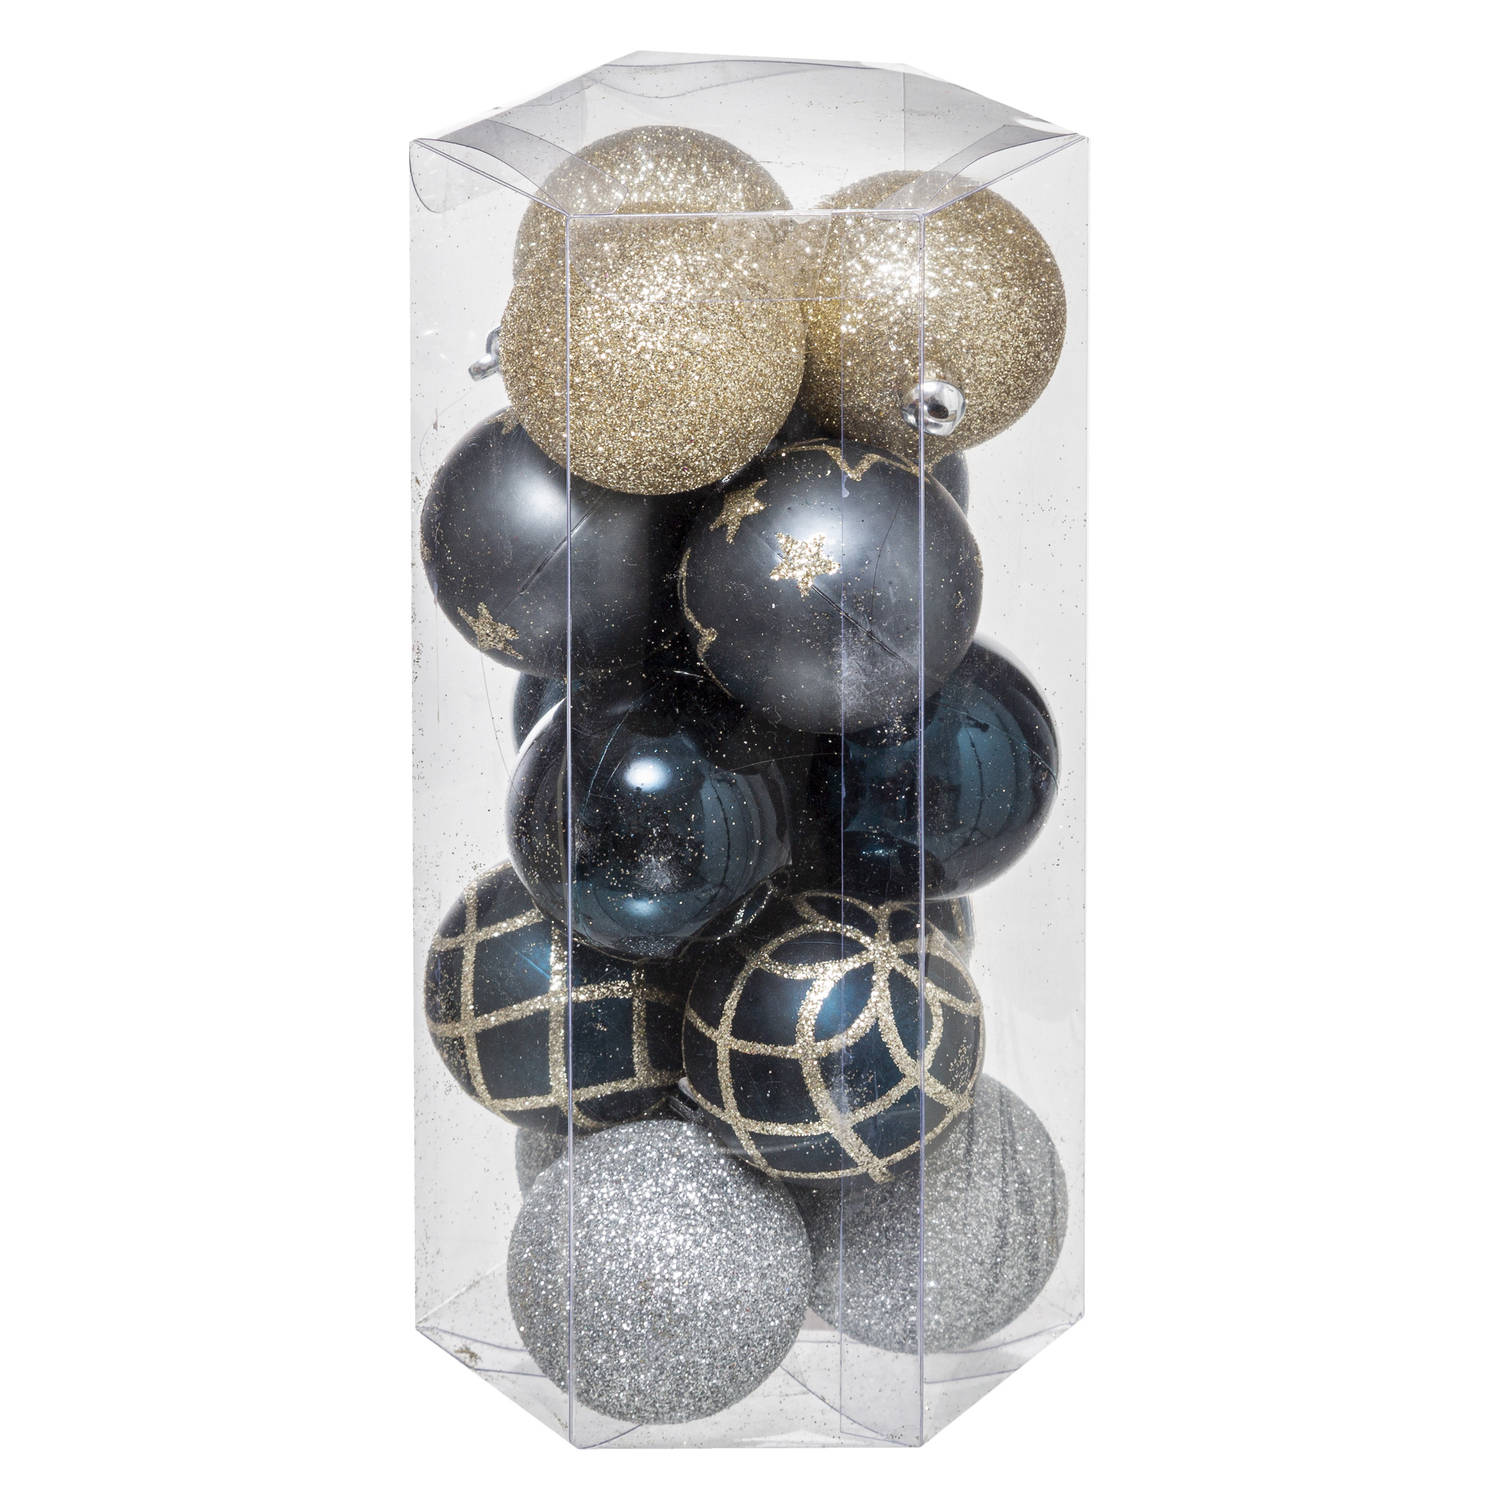 15x stuks kerstballen mix goud/blauw/zilver gedecoreerd kunststof 5 cm - Kerstbal